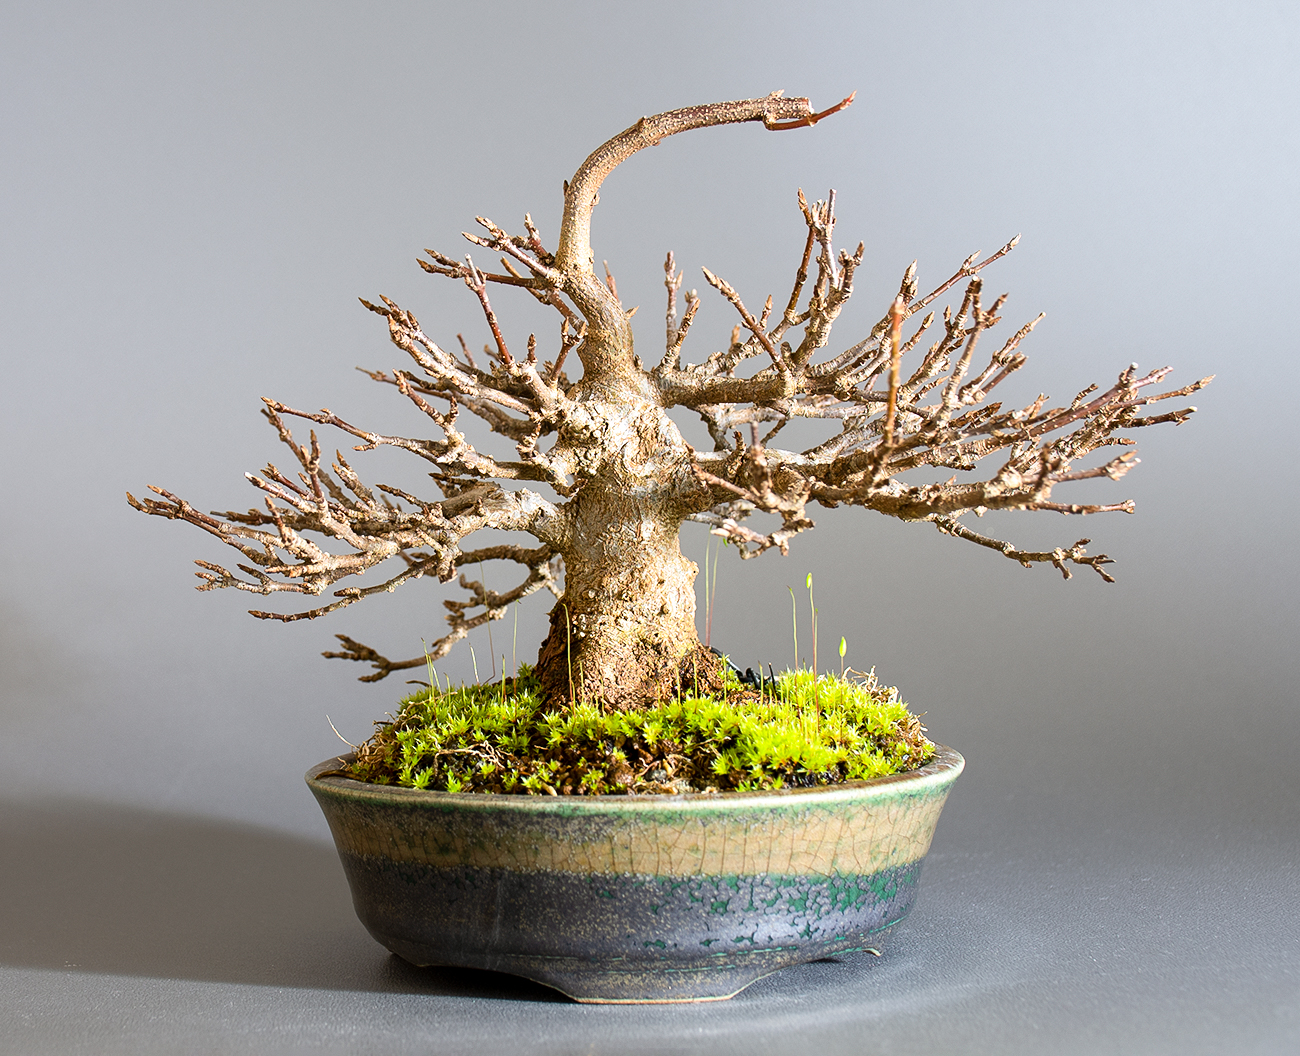 トウカエデ-H2-4（とうかえで・唐楓）雑木盆栽の販売と育て方・作り方・Acer buergerianum bonsai